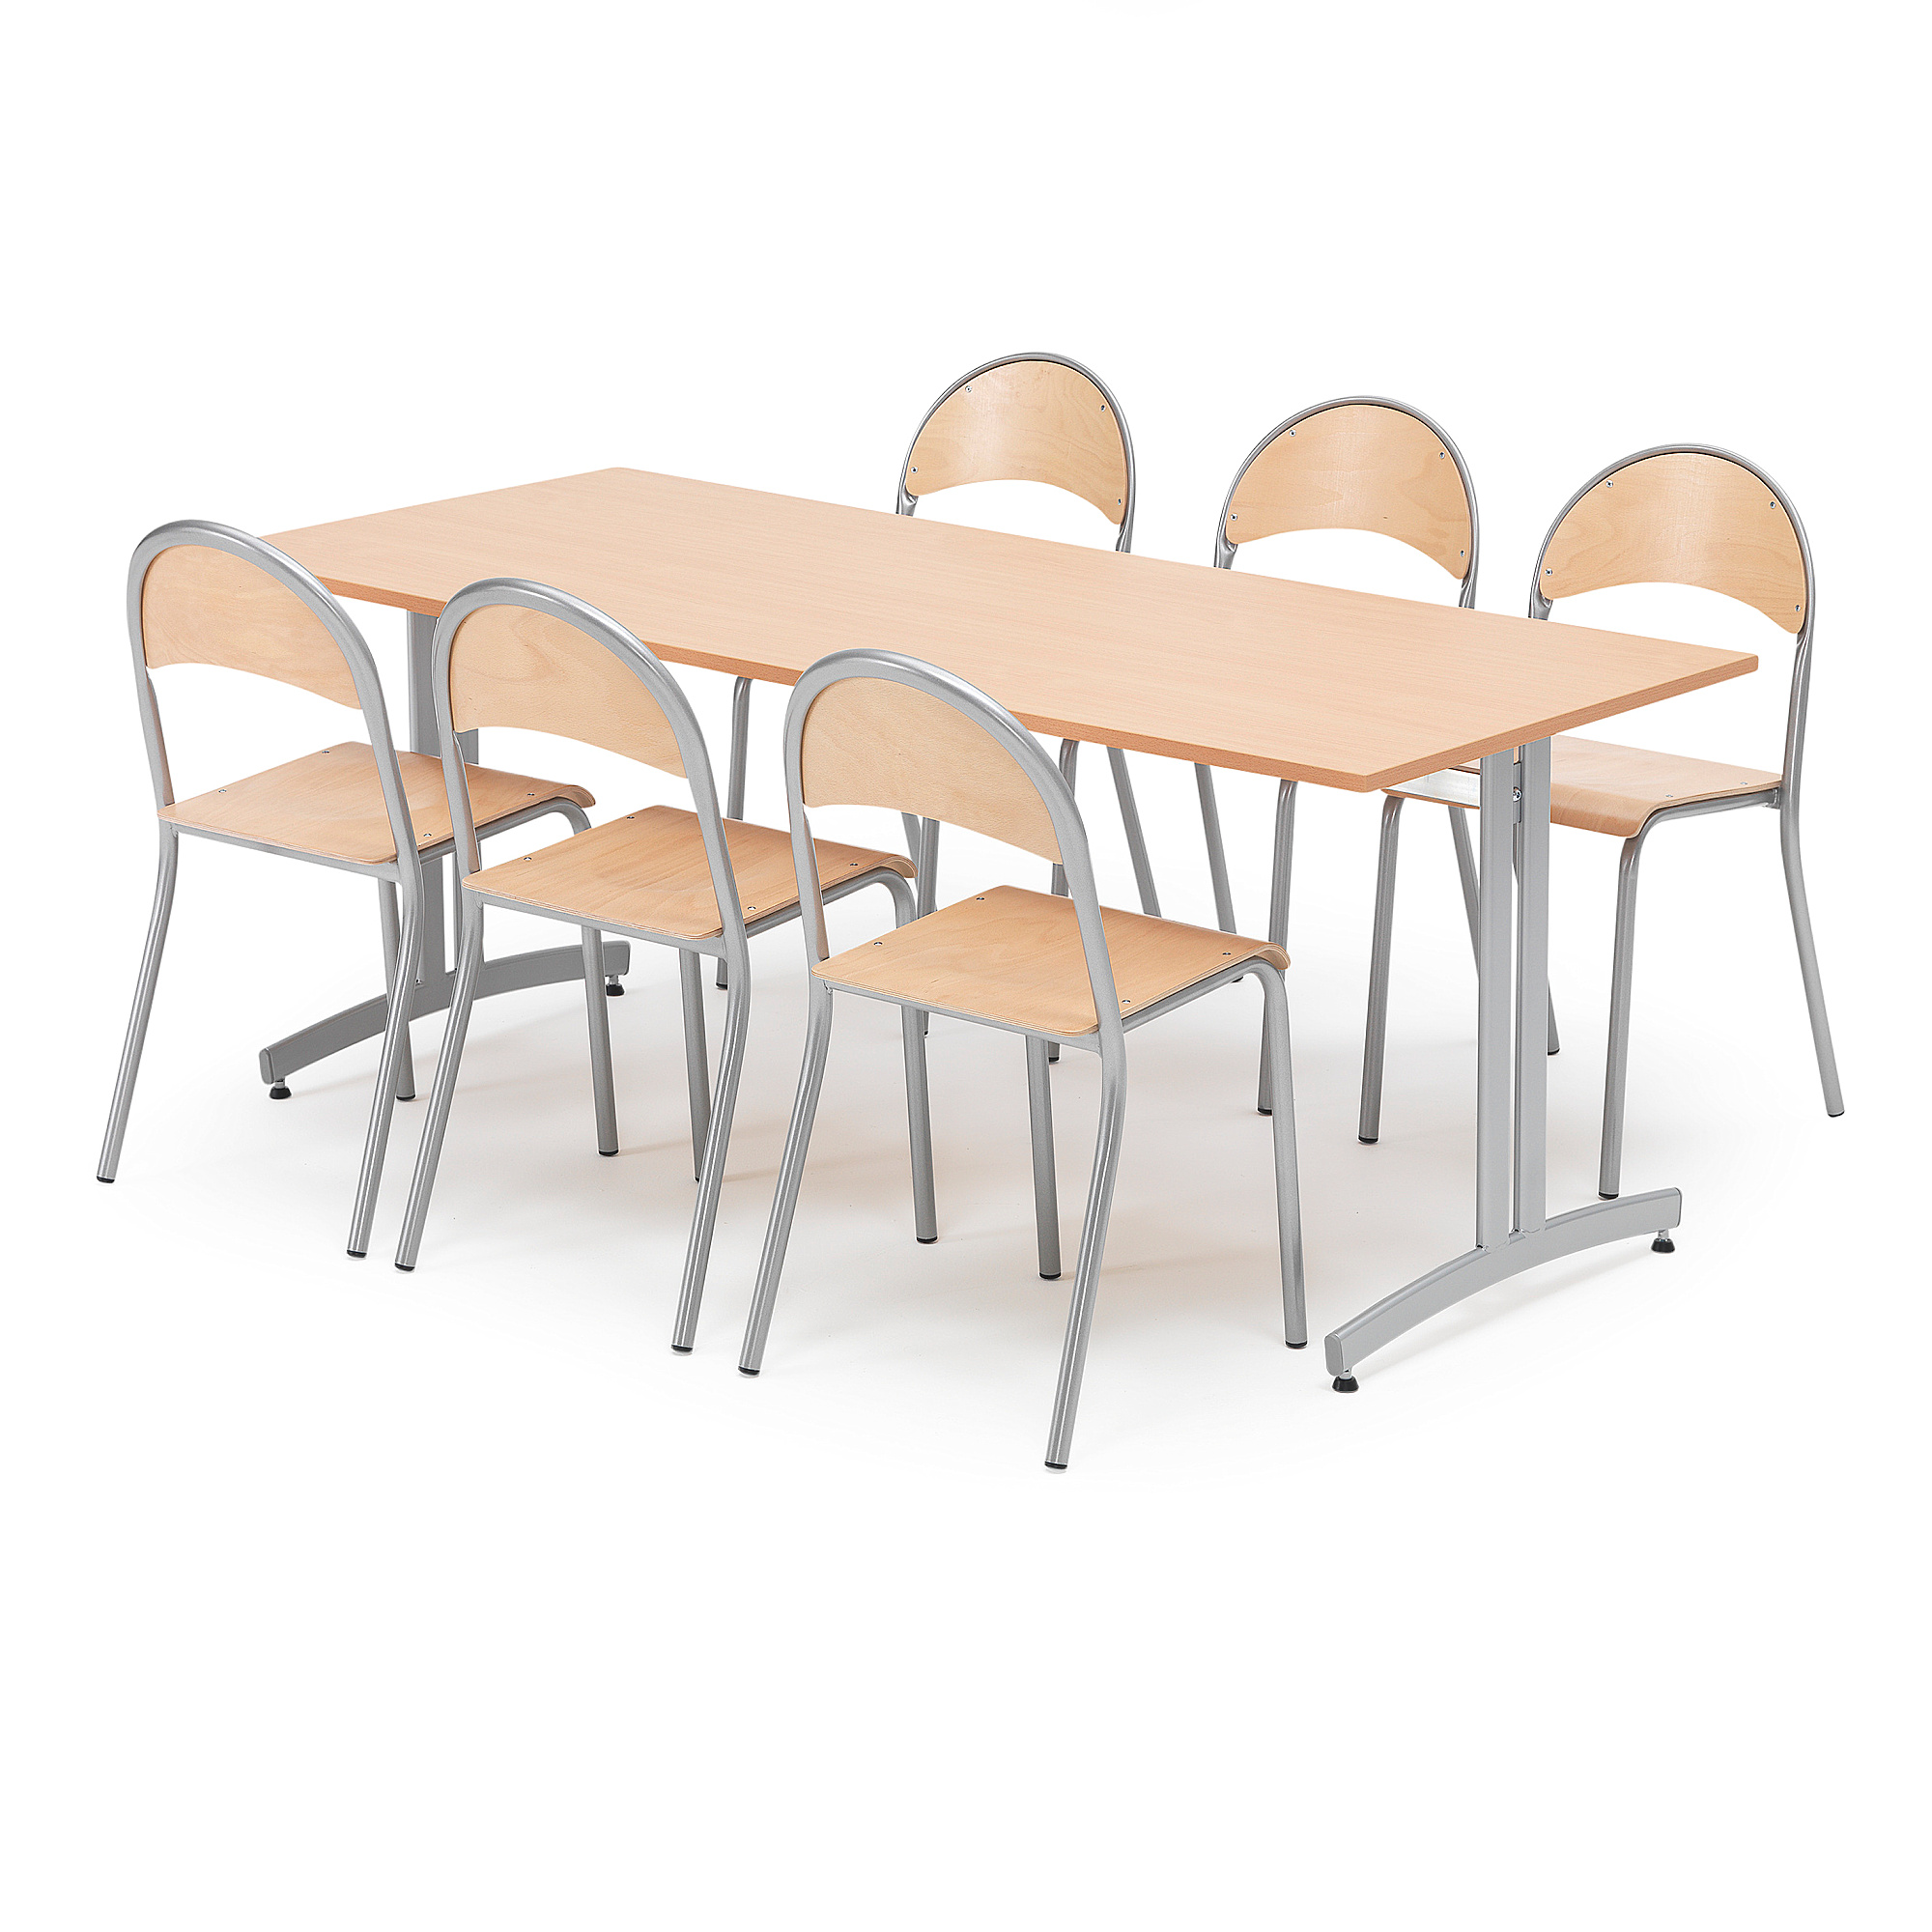 Jídelní sestava SANNA + TAMPA, stůl 1800x800 mm, buk + 6 židlí, buk/hliníkově šedá